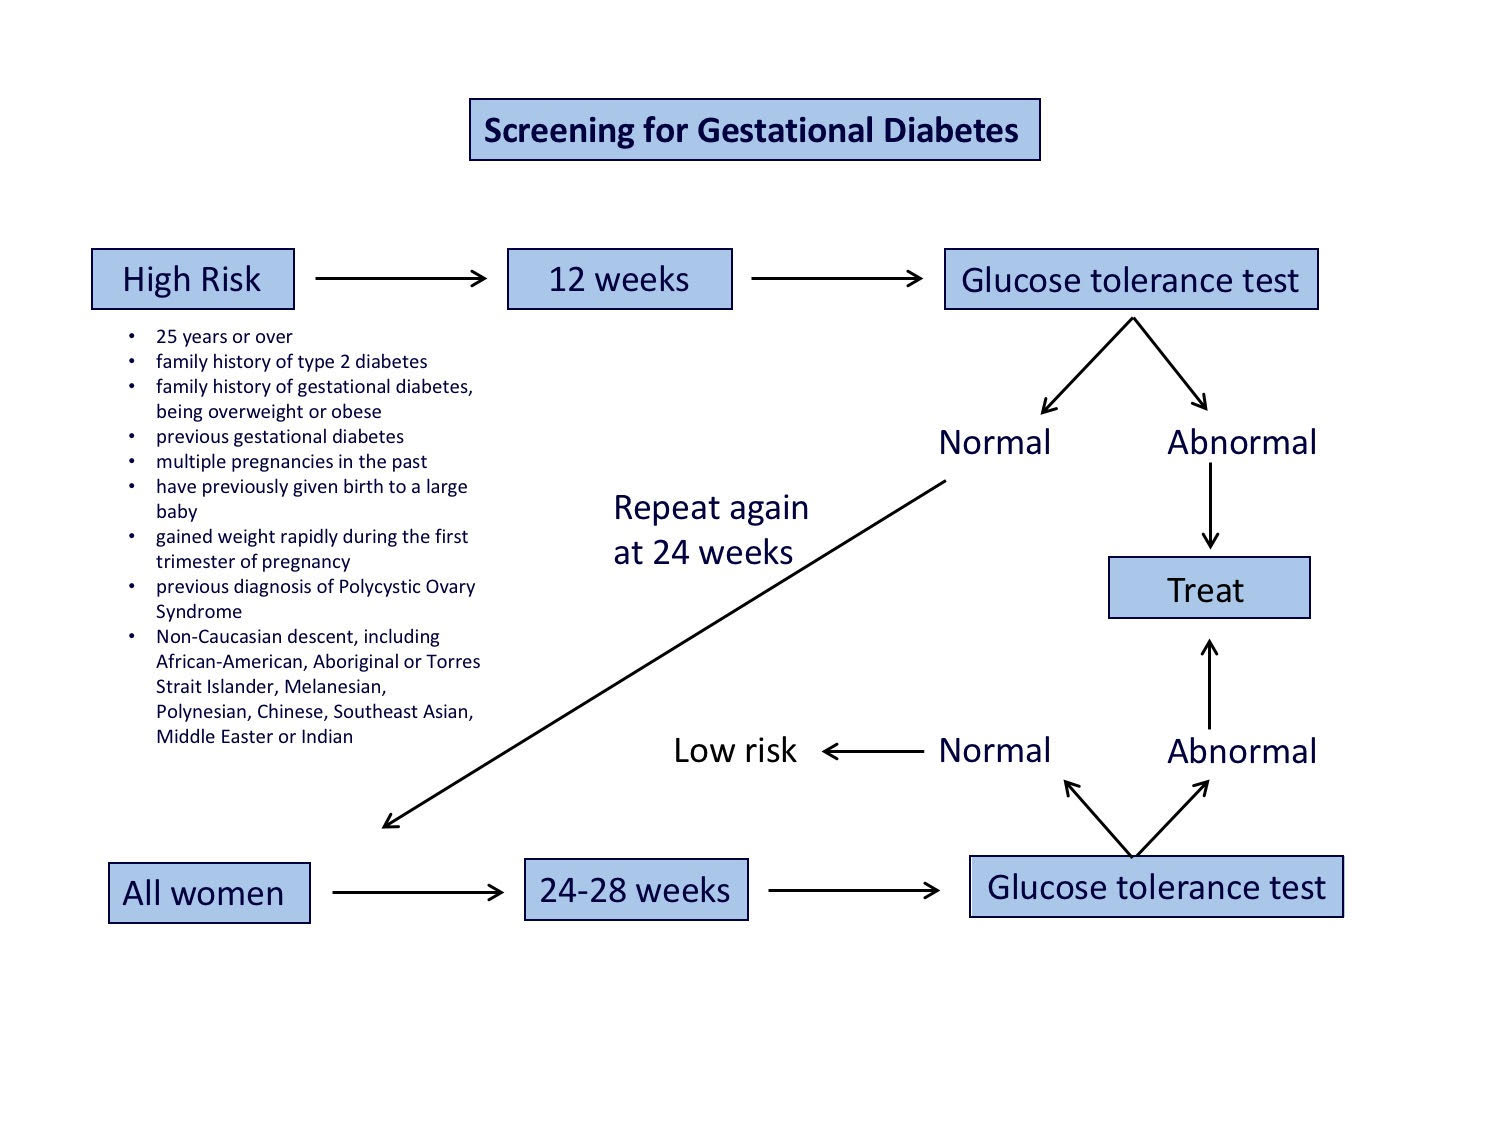 Screening for gestational diabetes